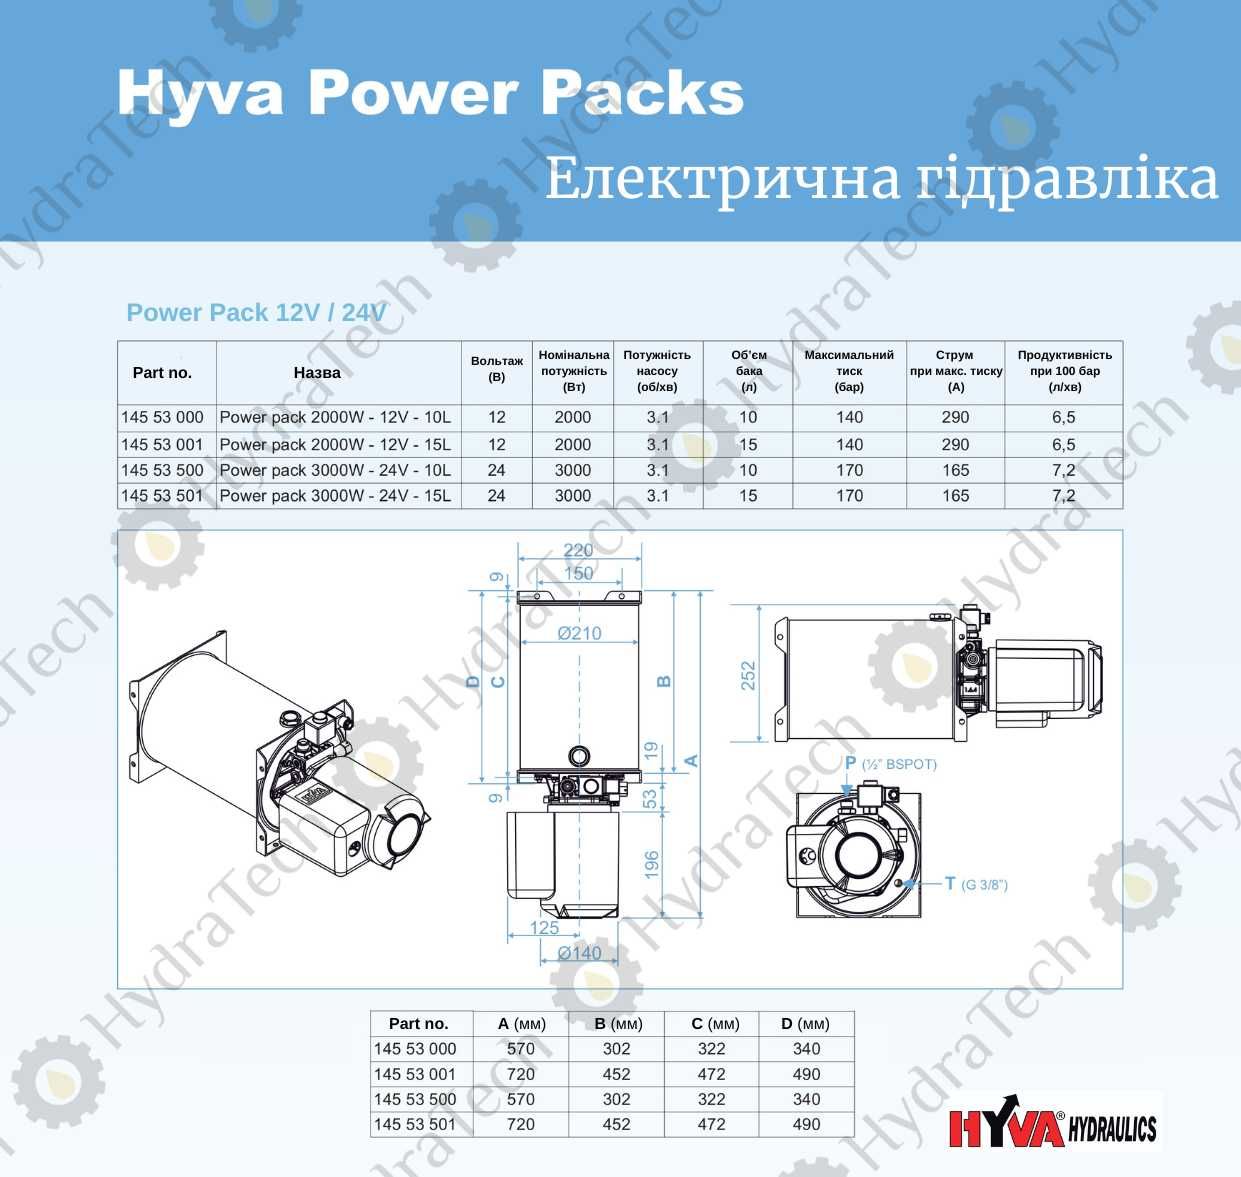 Гідравлічна електро установка Hyva на 12V PowerPack